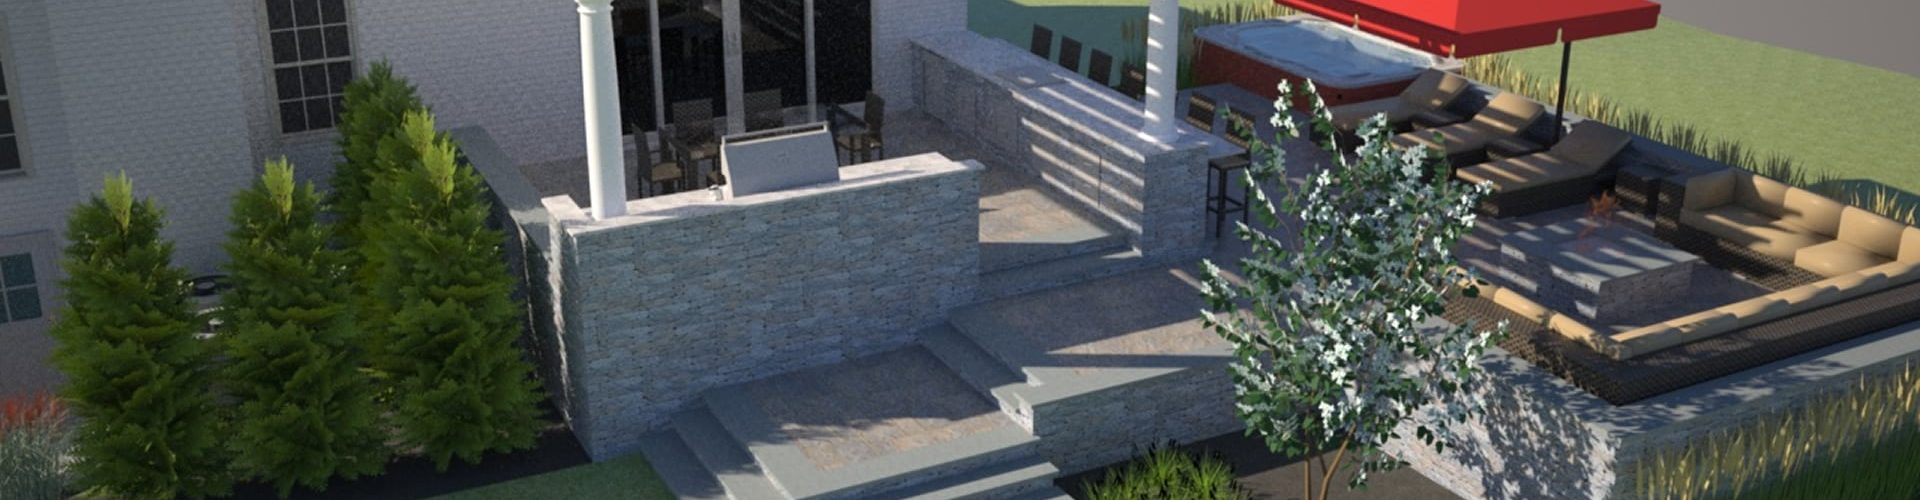 3-D Landscape Design Plan of Porch and Terrace